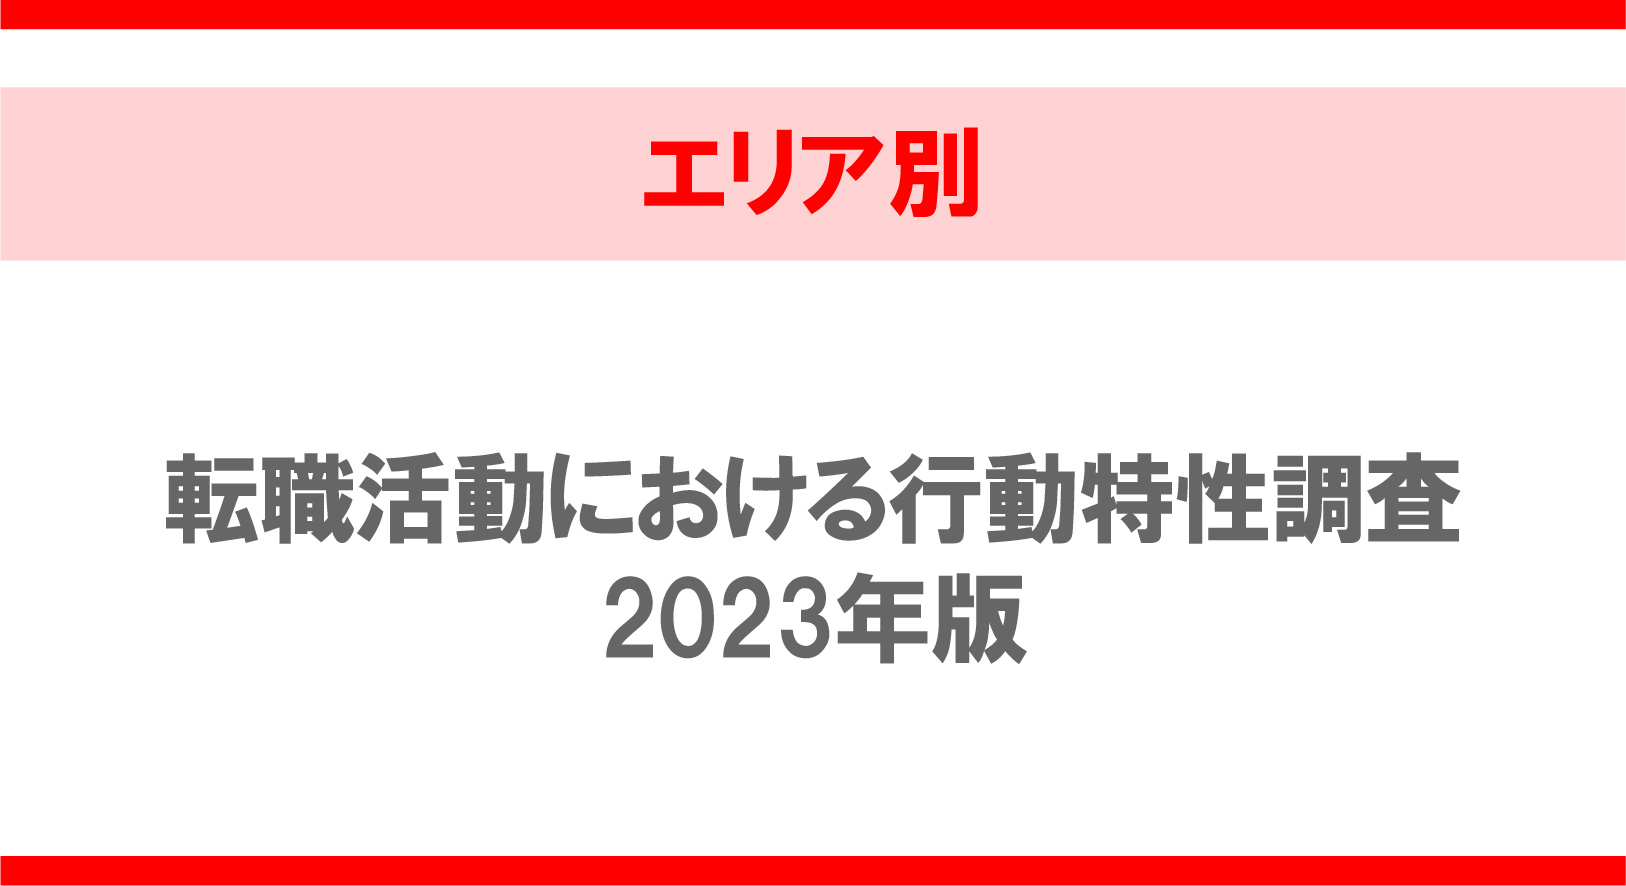 【エリア別】転職活動における行動特性調査2023年版